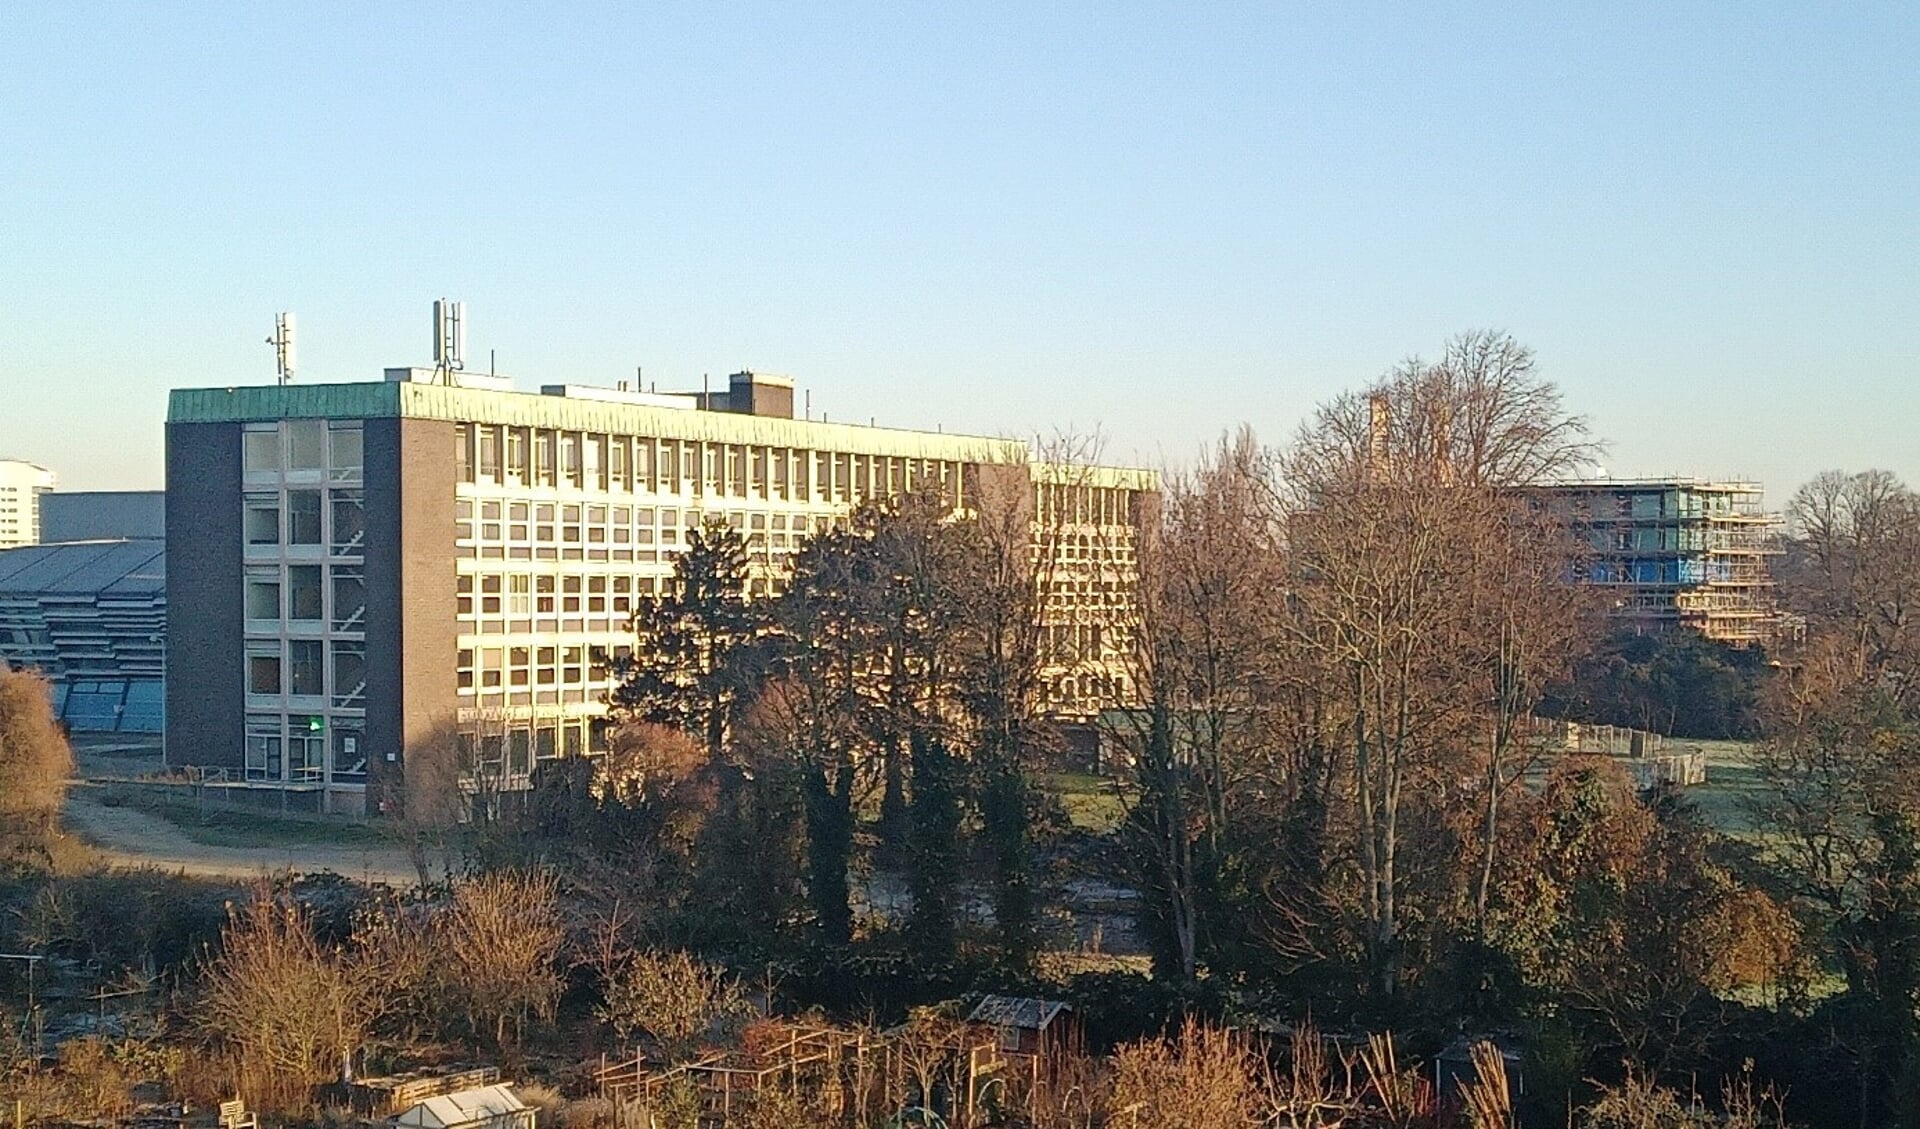 De locatie Diaconessenhuis aan de Fonteynenburglaan in Voorburg (foto: VVD LV).